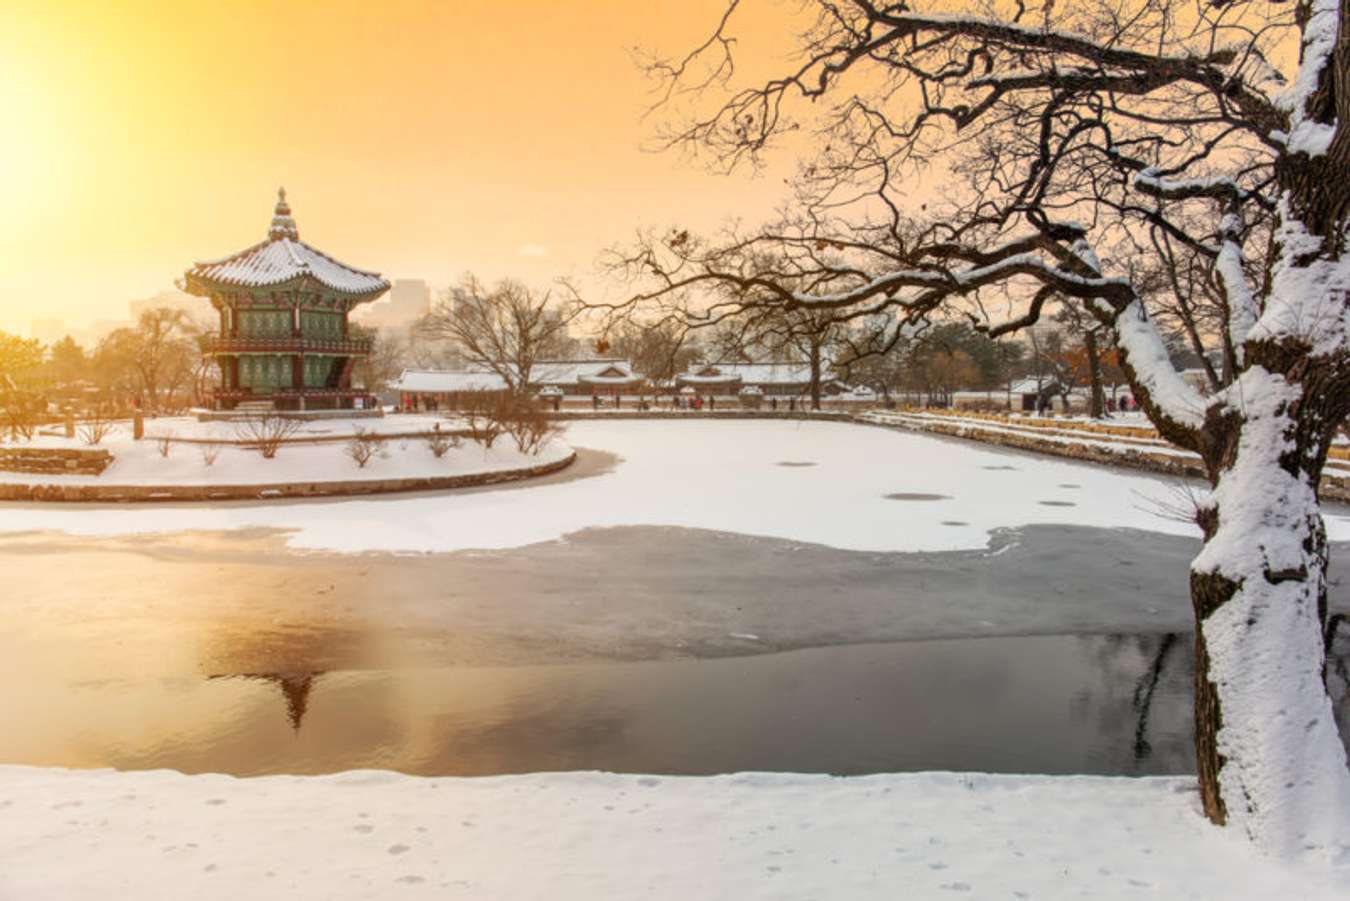 หนาวจนร้องขอชีวิต 15 ที่เที่ยวเกาหลีต้องไปก่อนหมดหิมะ